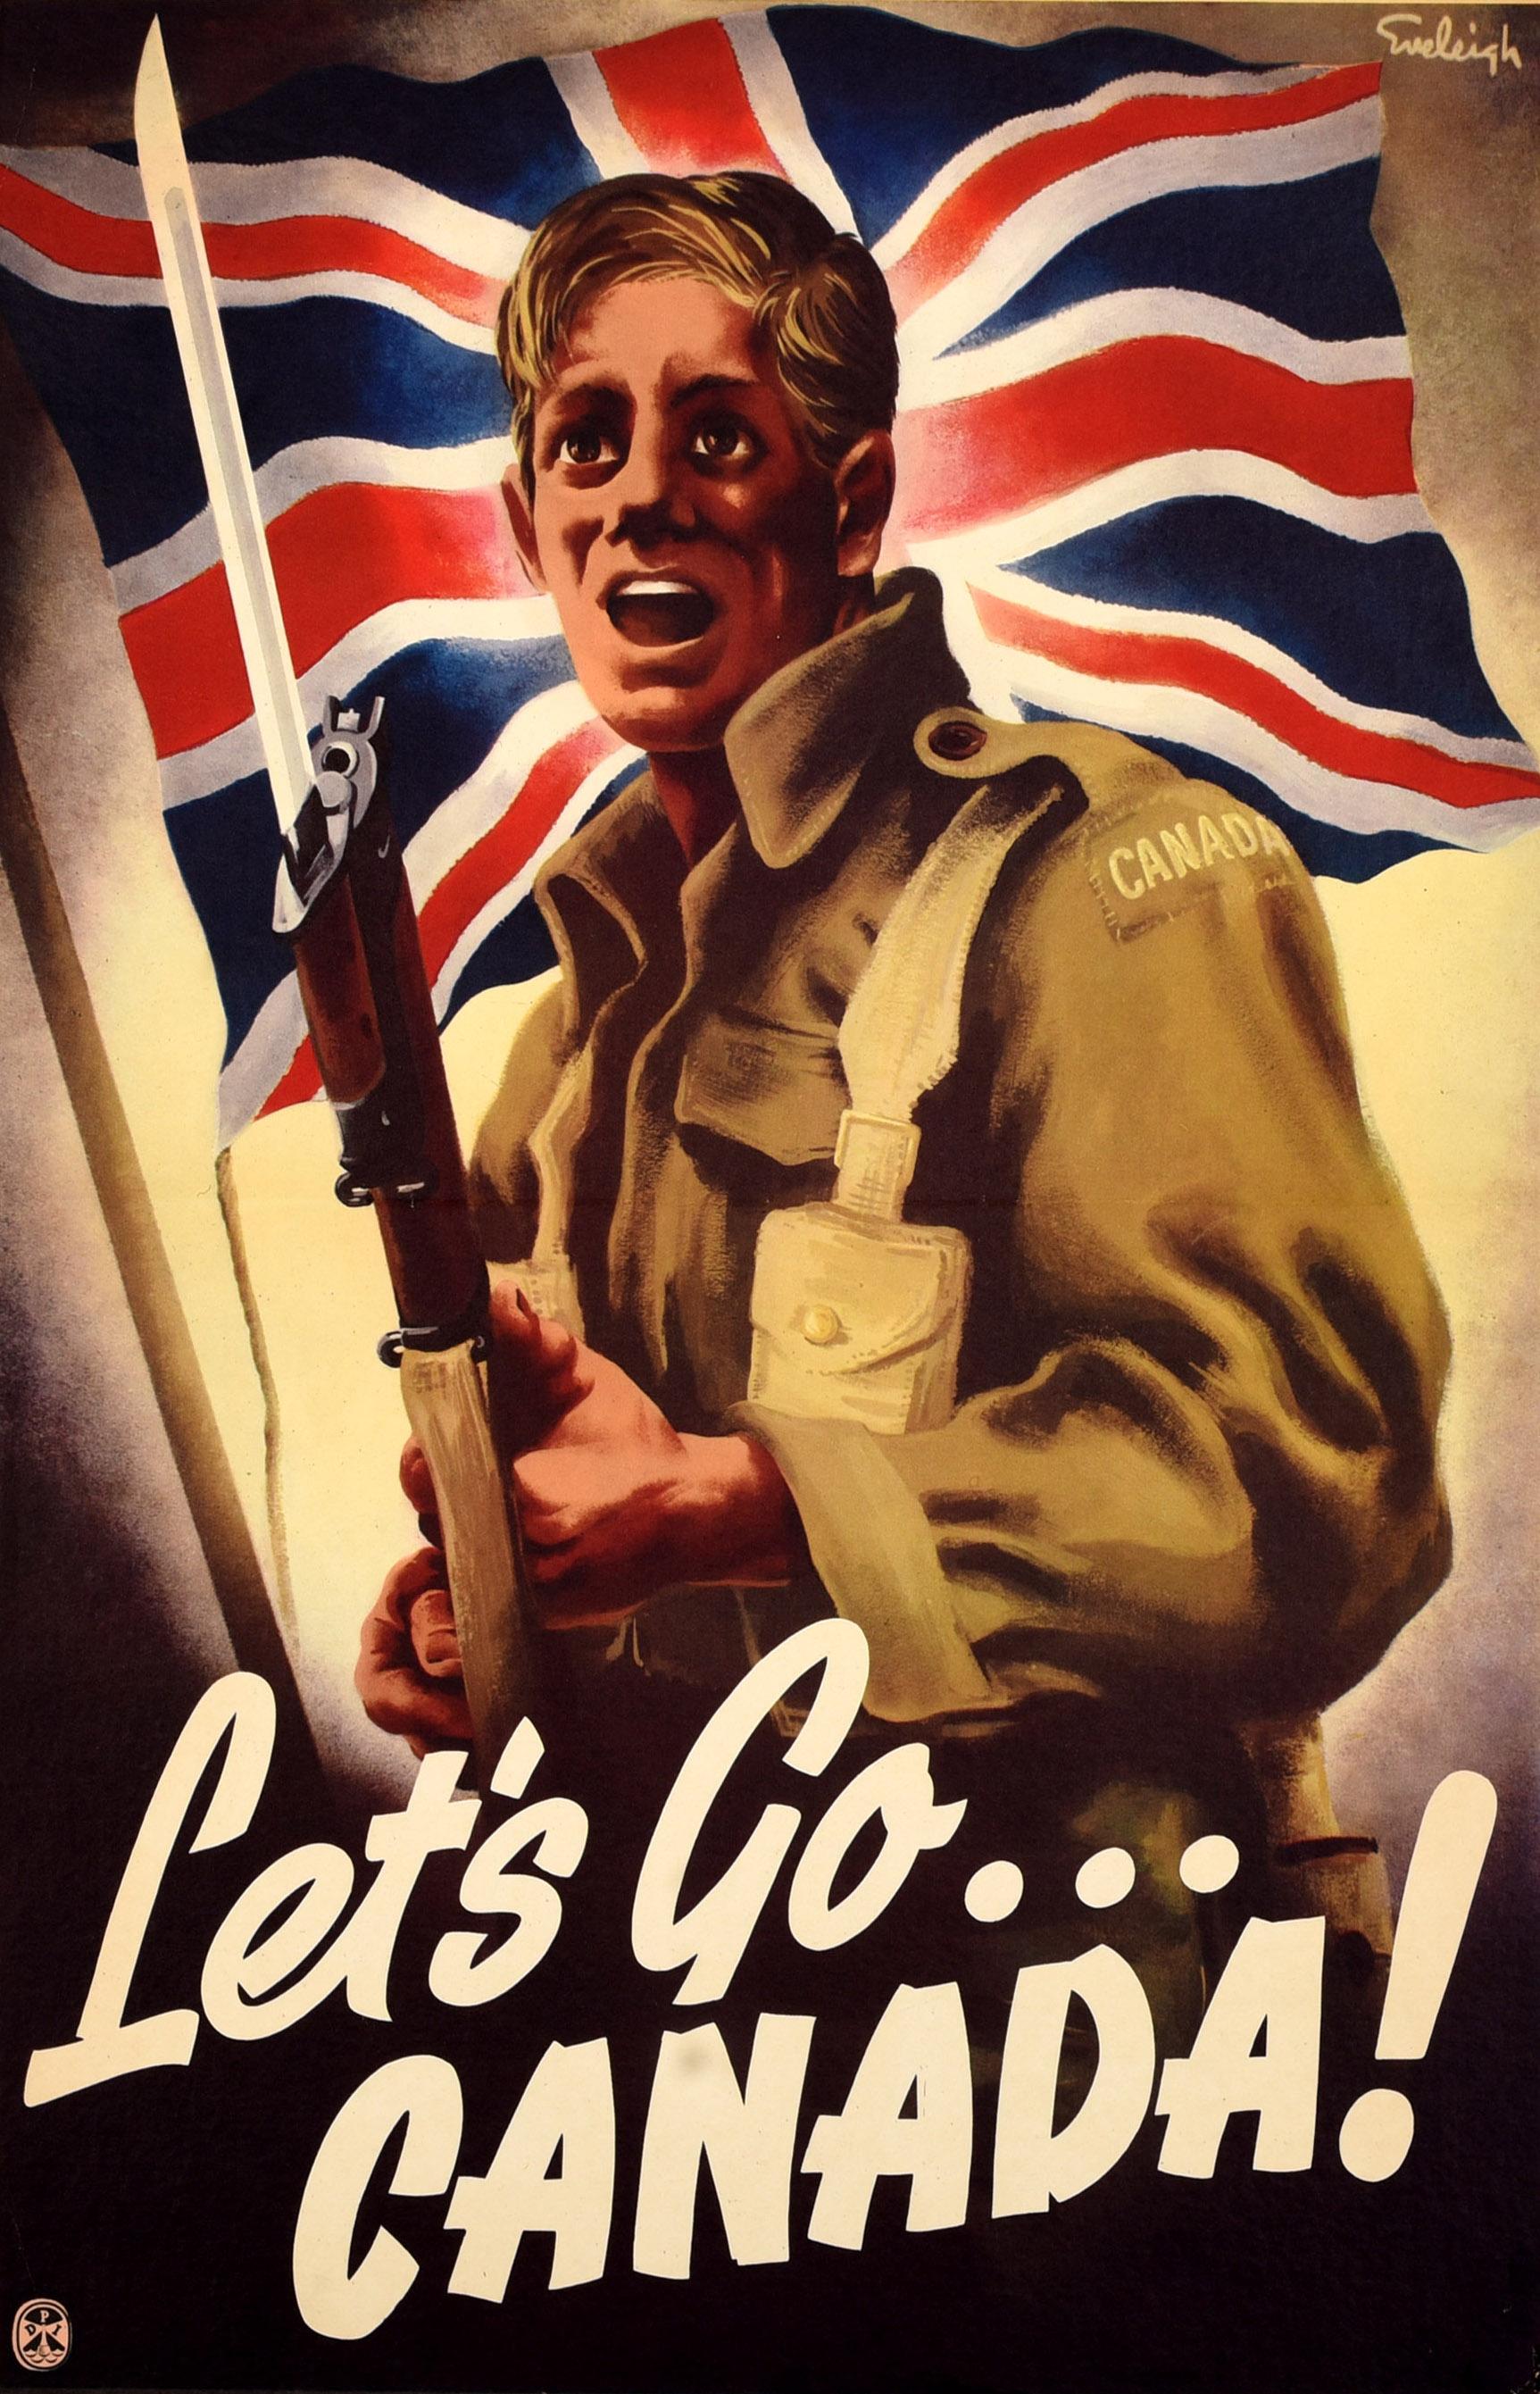 Affiche de propagande canadienne datant de la Seconde Guerre mondiale, Lets Go Canada - Print de Unknown